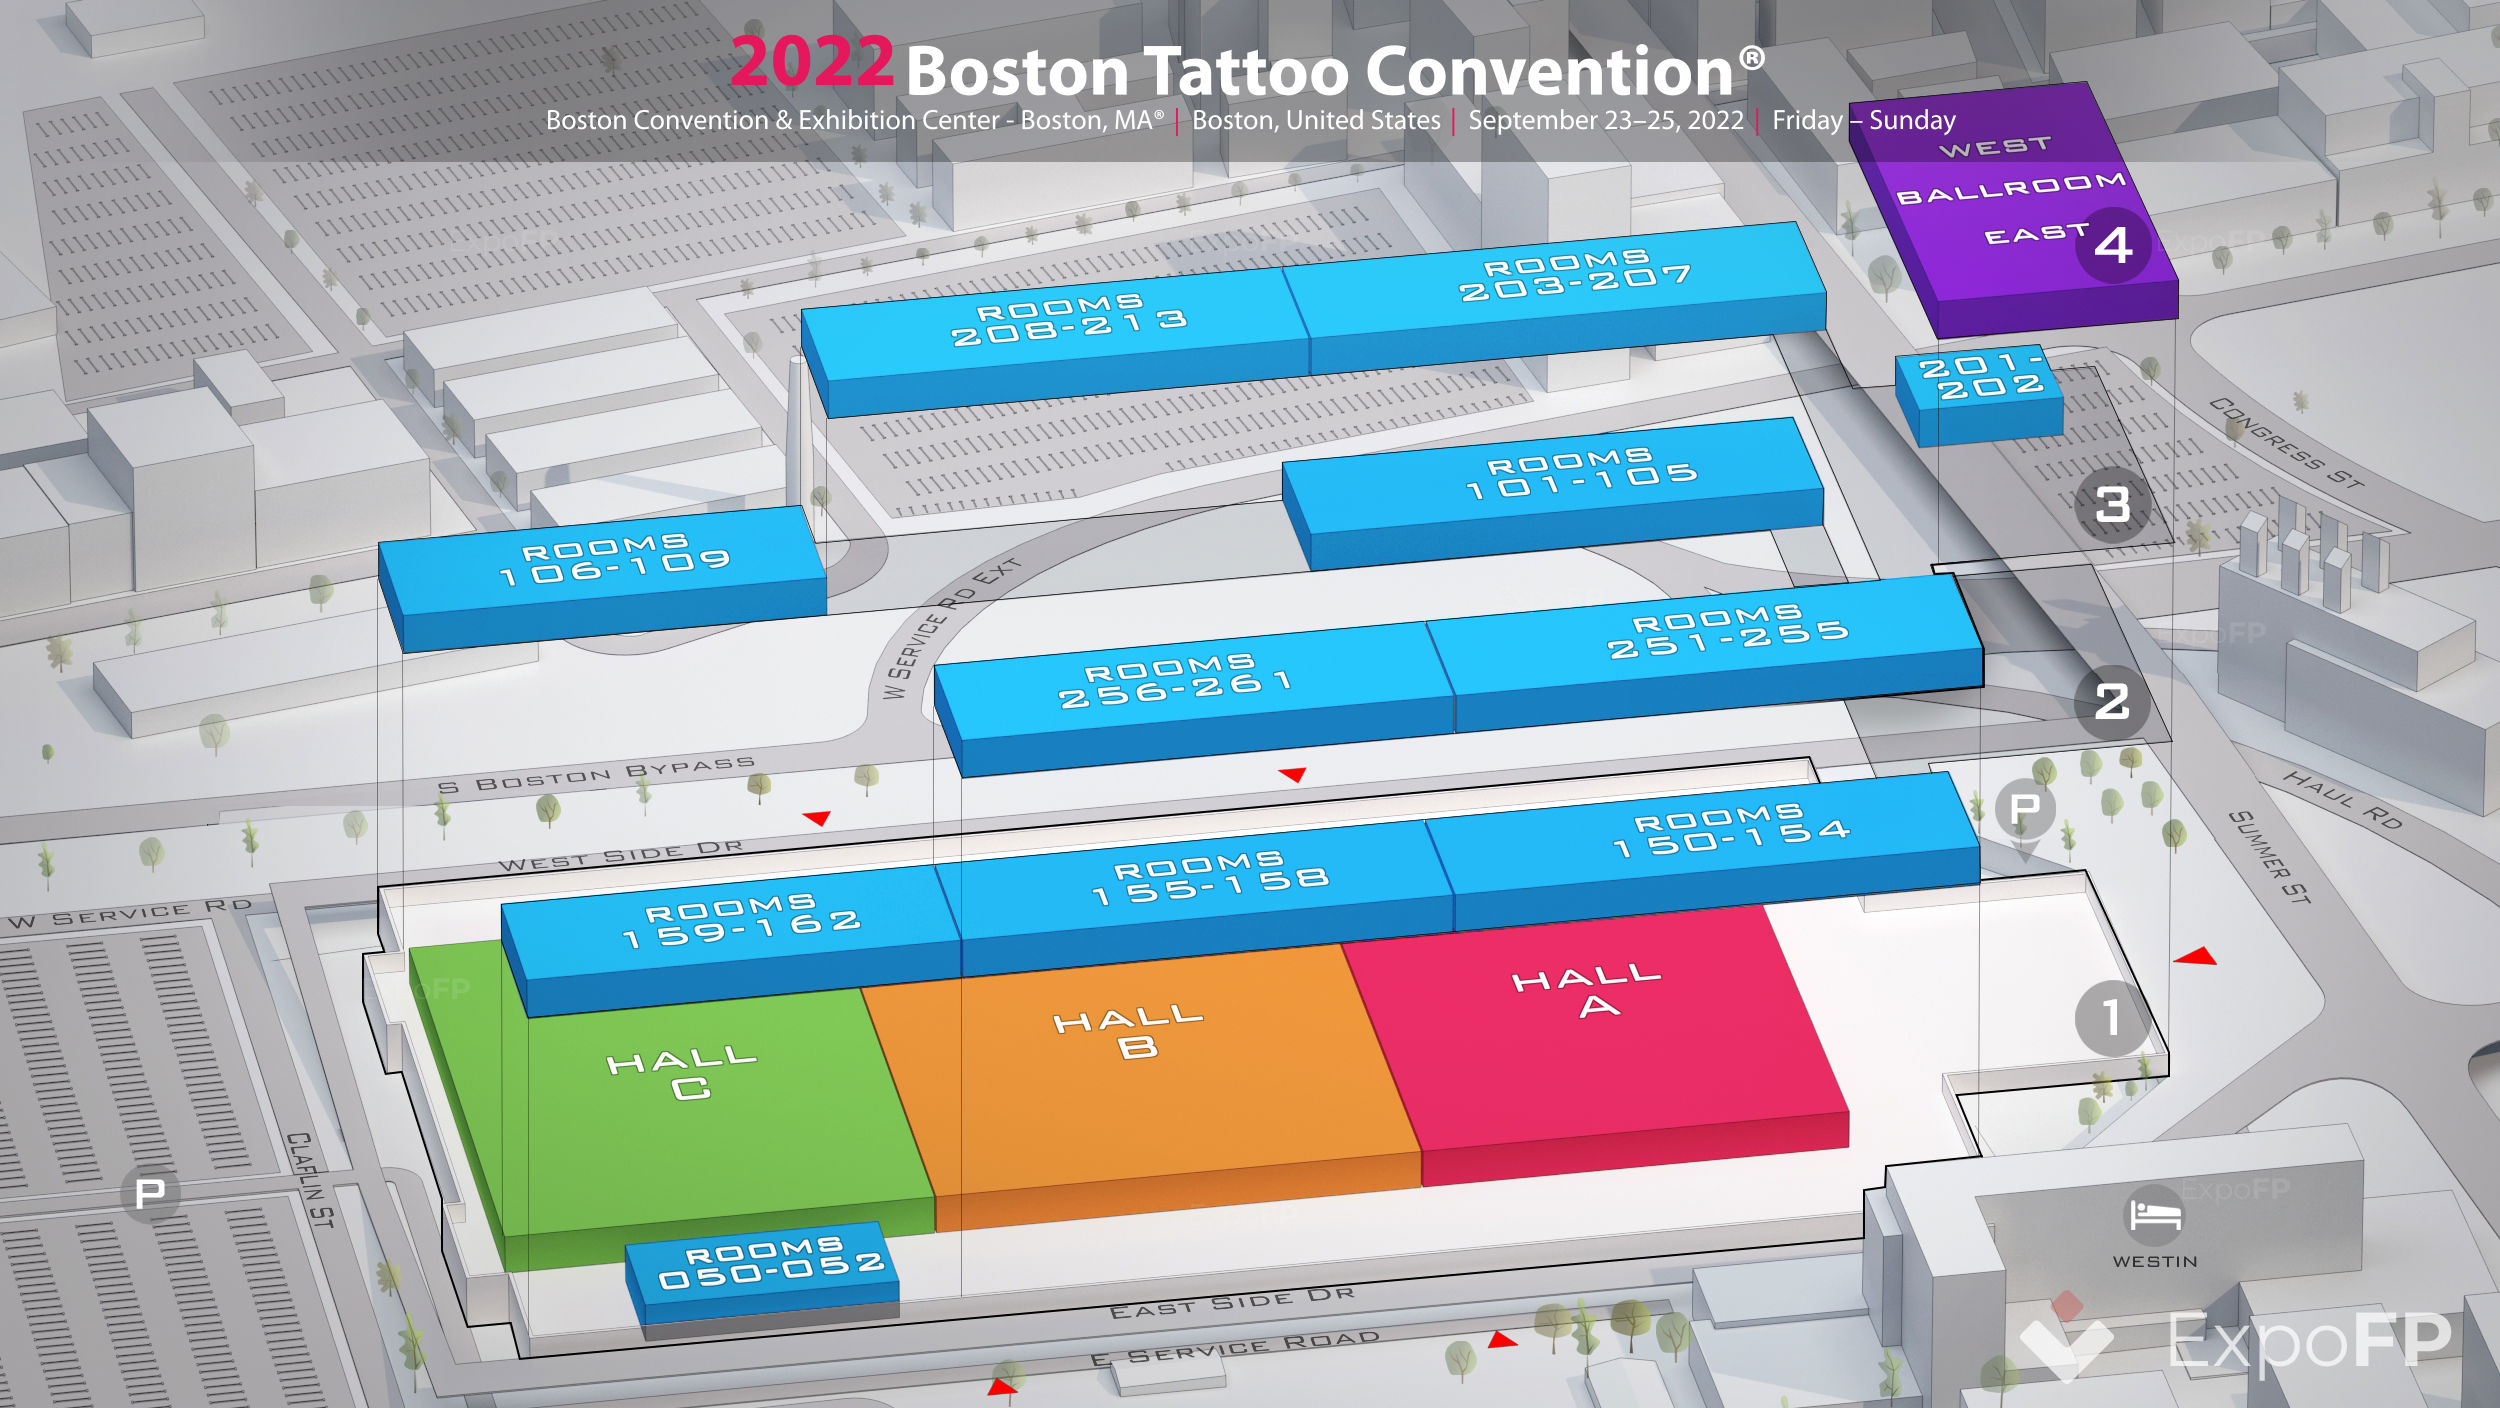 Boston Tattoo Convention 2022 in Boston Convention & Exhibition Center -  Boston, MA